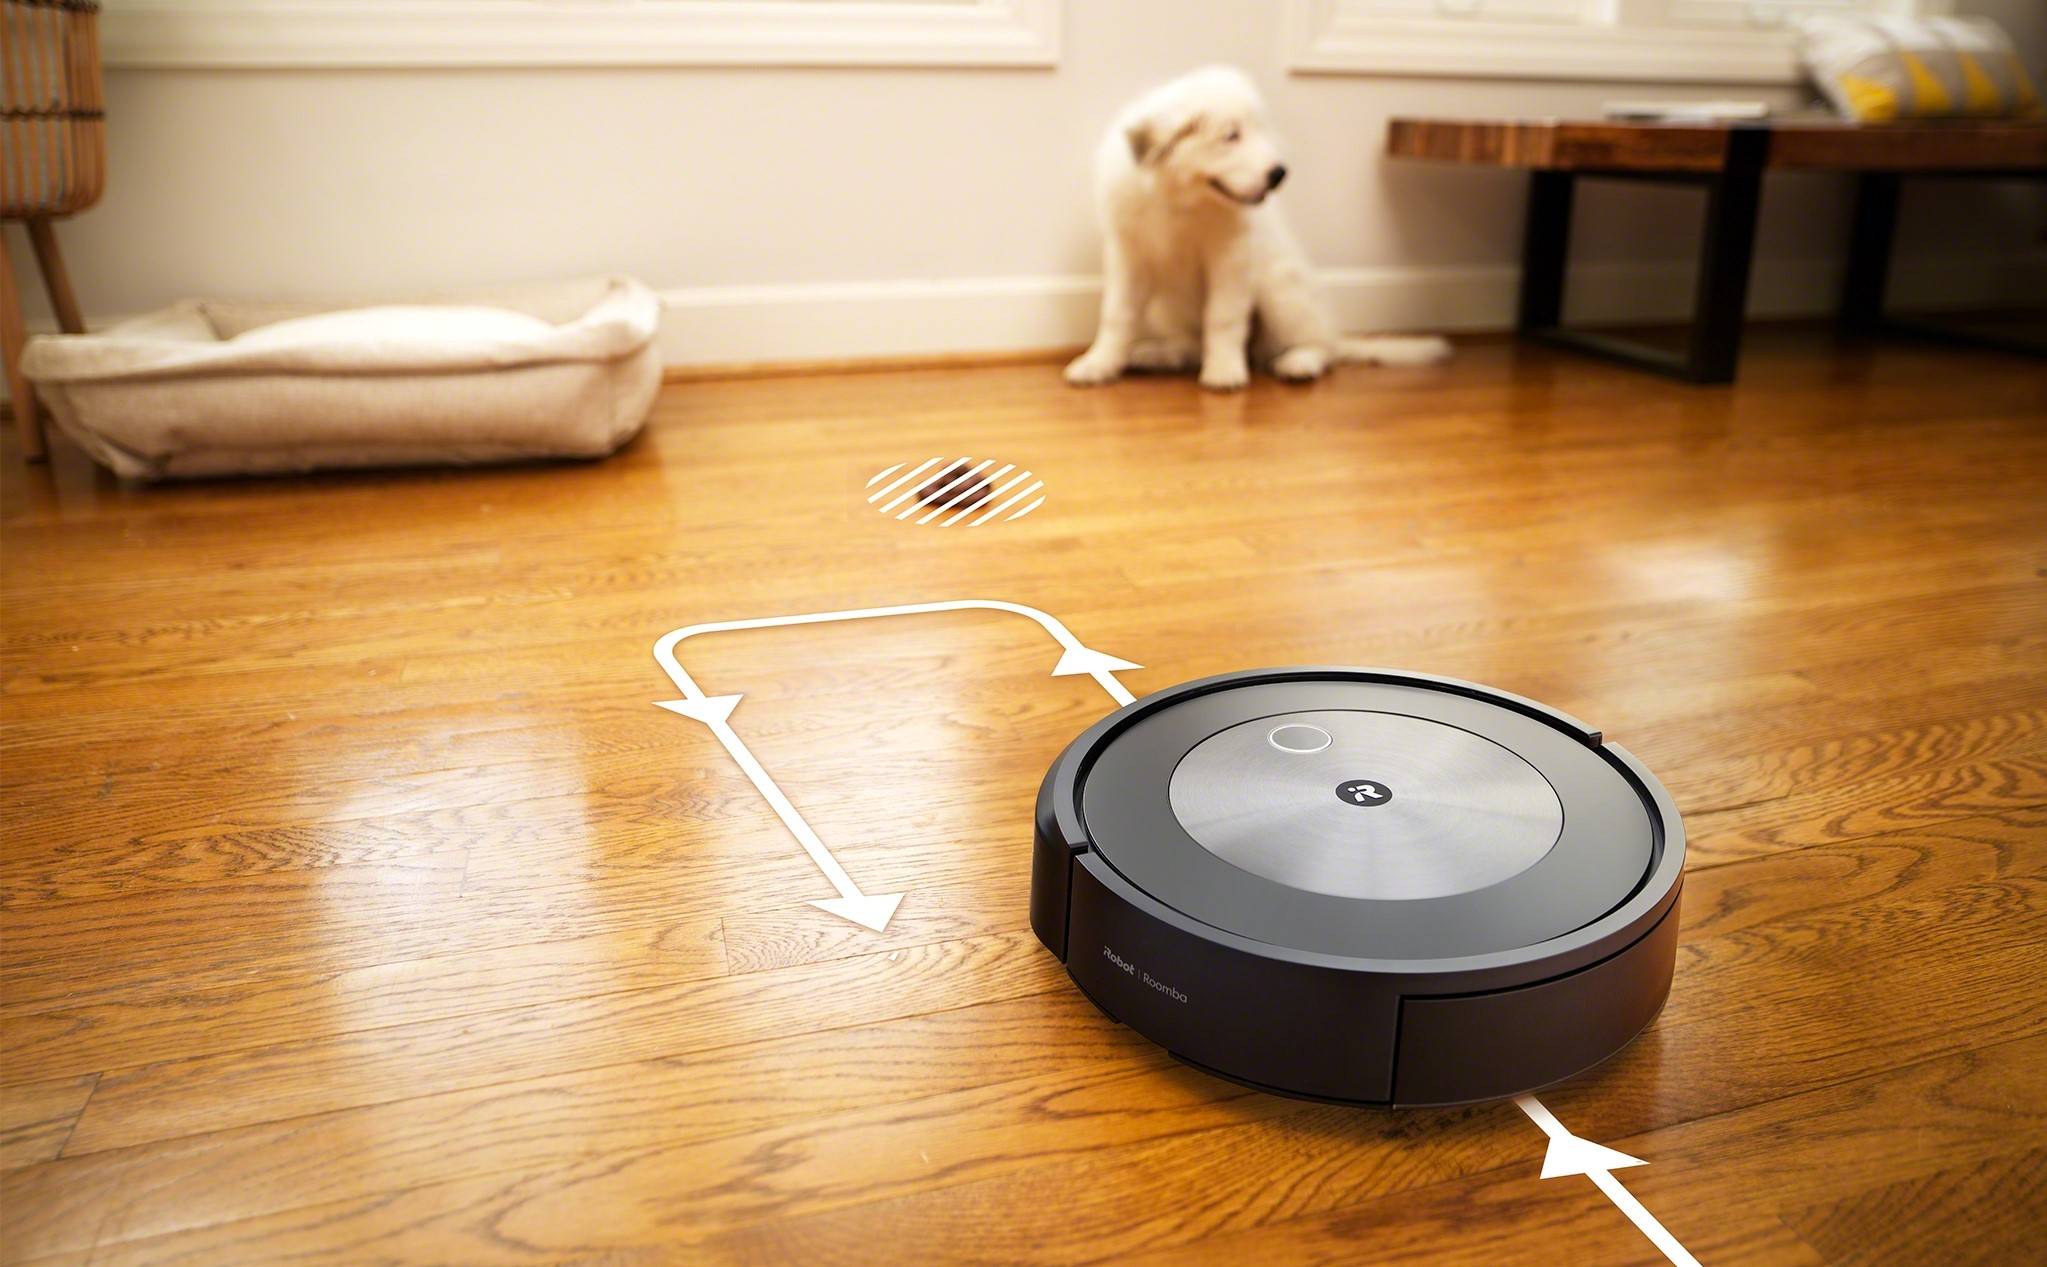 Hayvan dışkısını algılayabilen Robot Roomba j7 Plus tanıtıldı